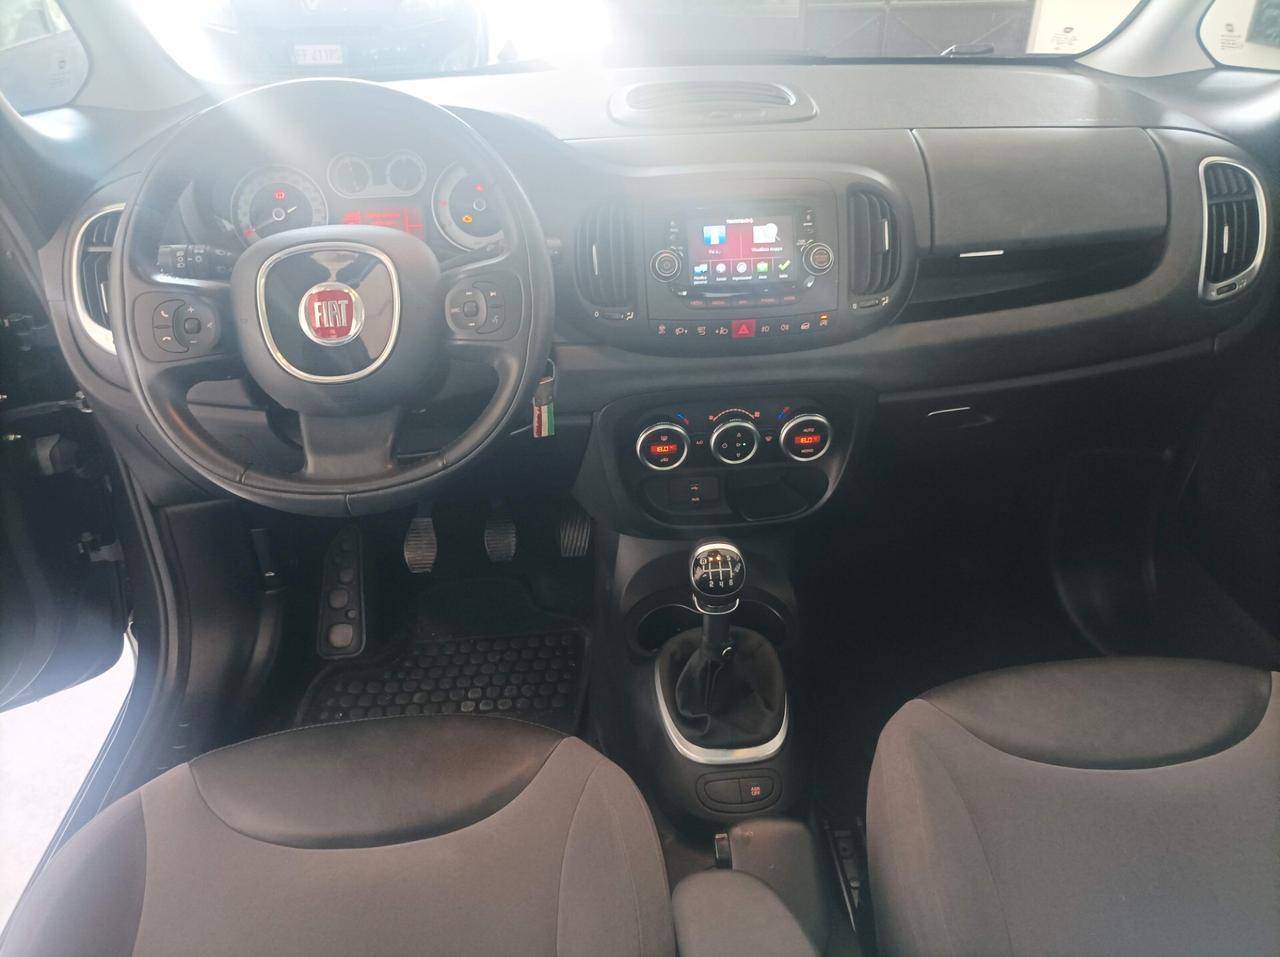 Fiat 500L 1.6 Multijet 105 CV Lounge 10/2014